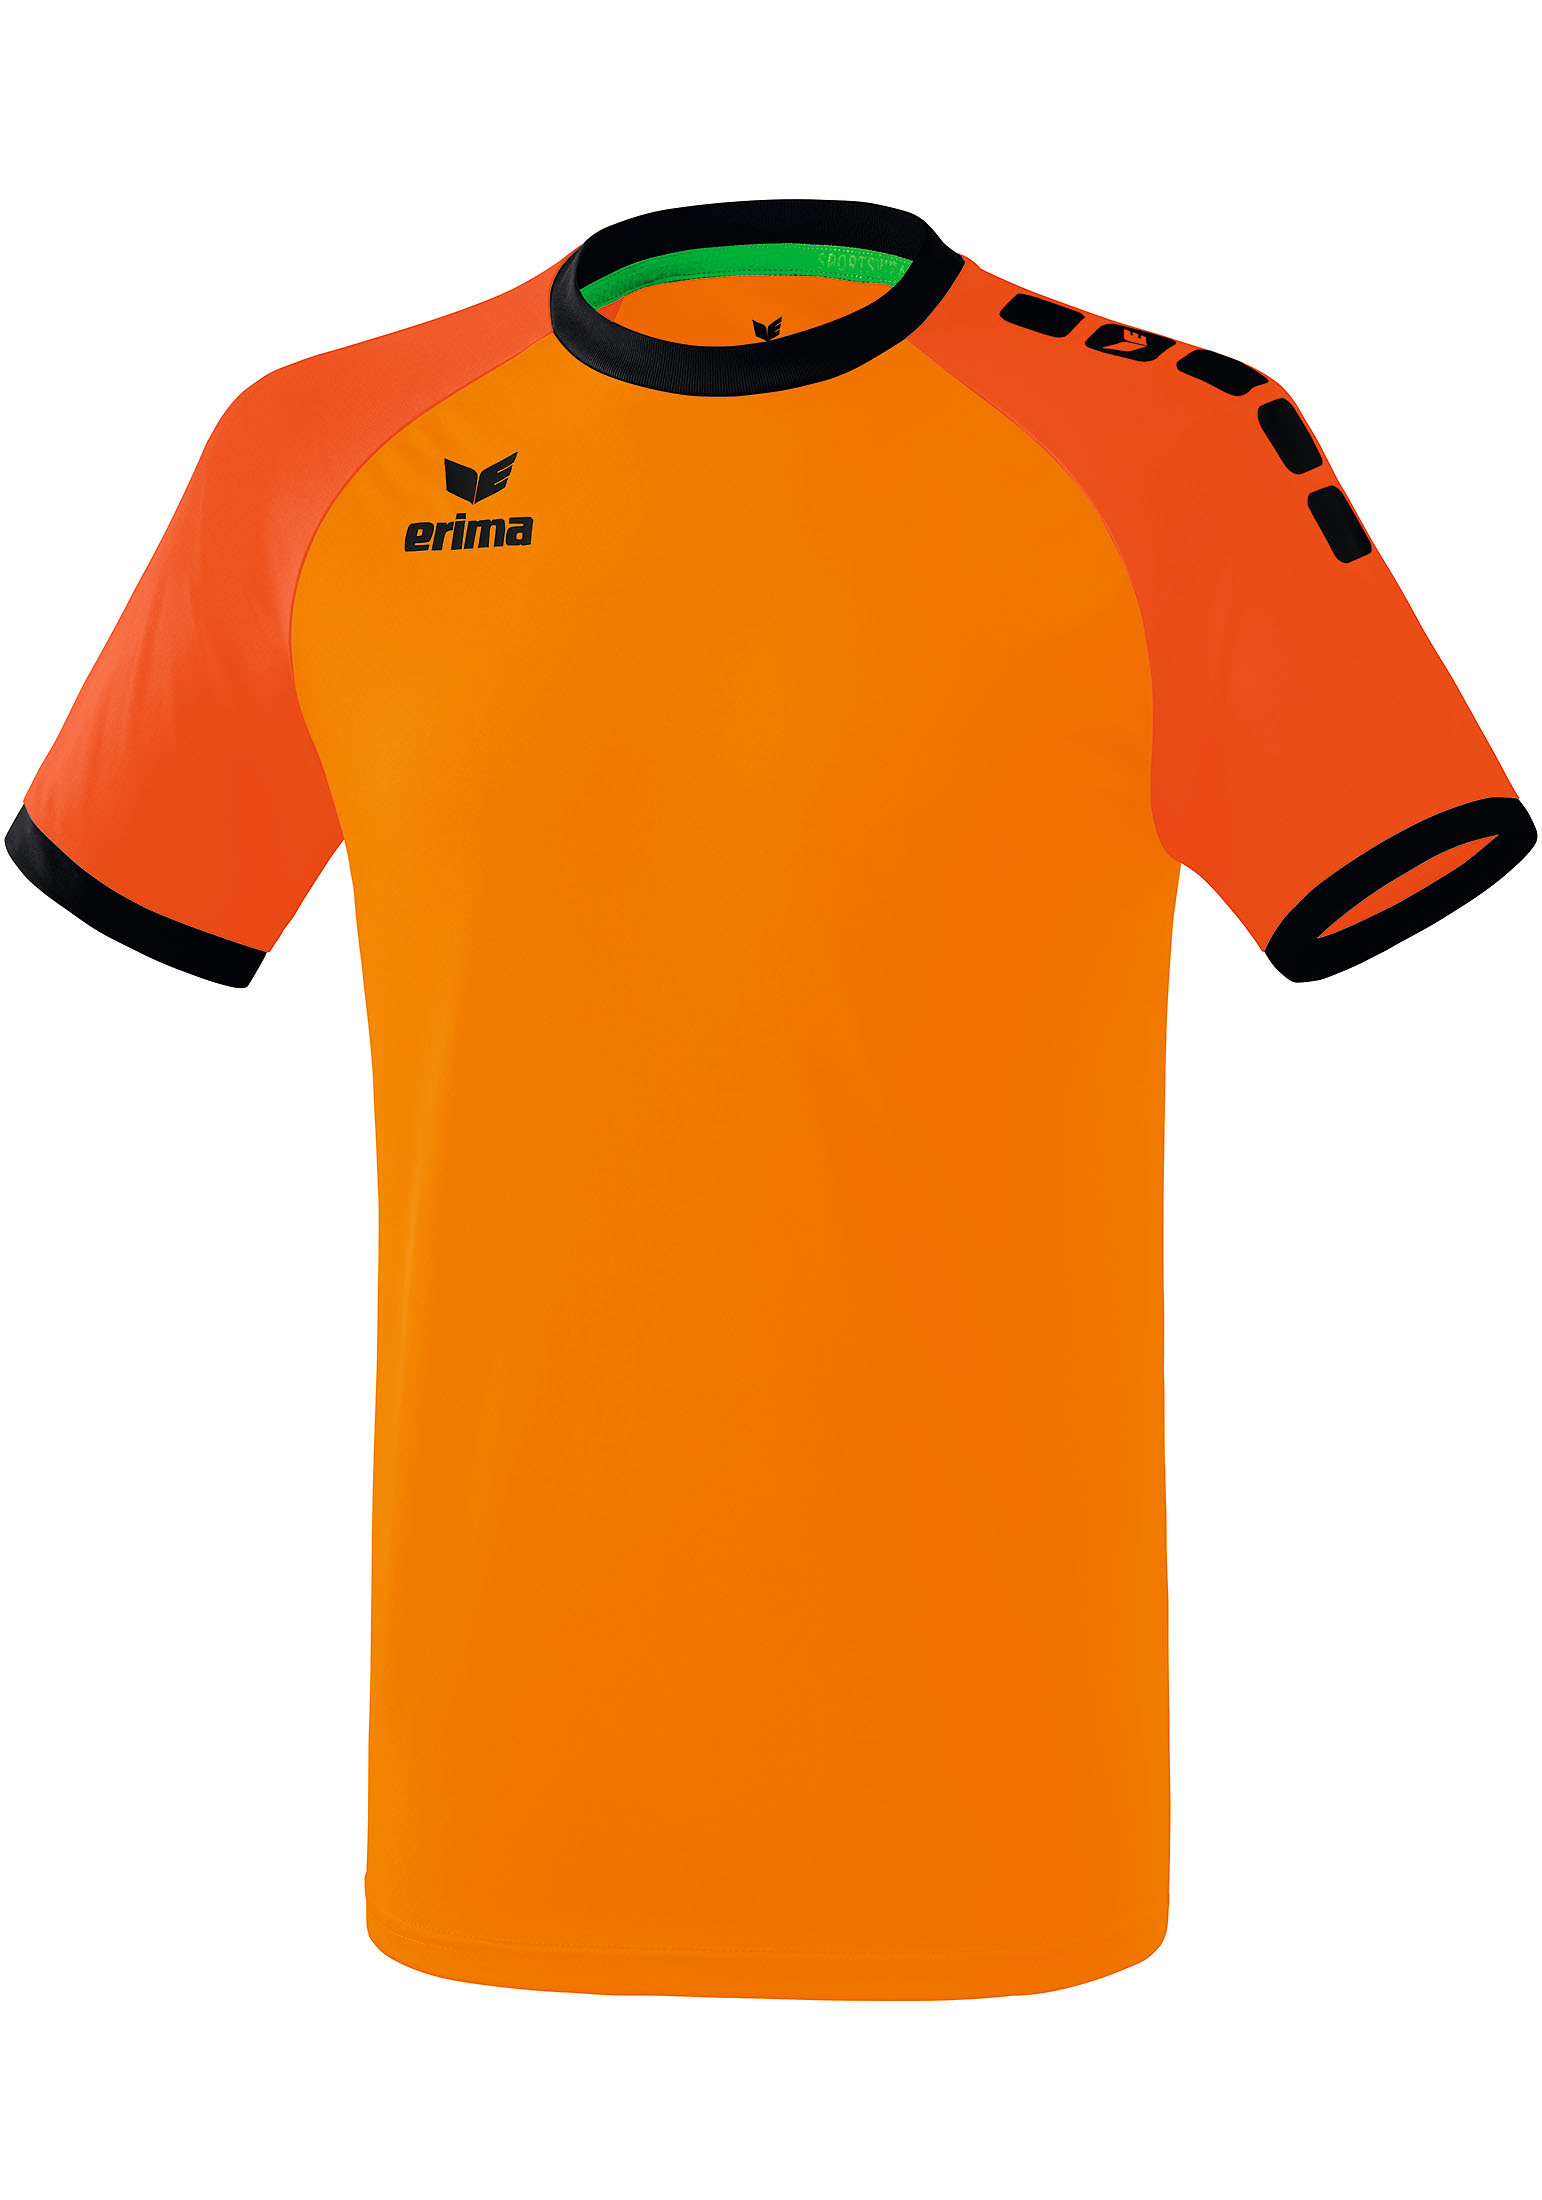 Рубашка erima Zenari 3.0 Trikot, оранжевый рубашка erima zenari 3 0 trikot серый меланж черный темно серый